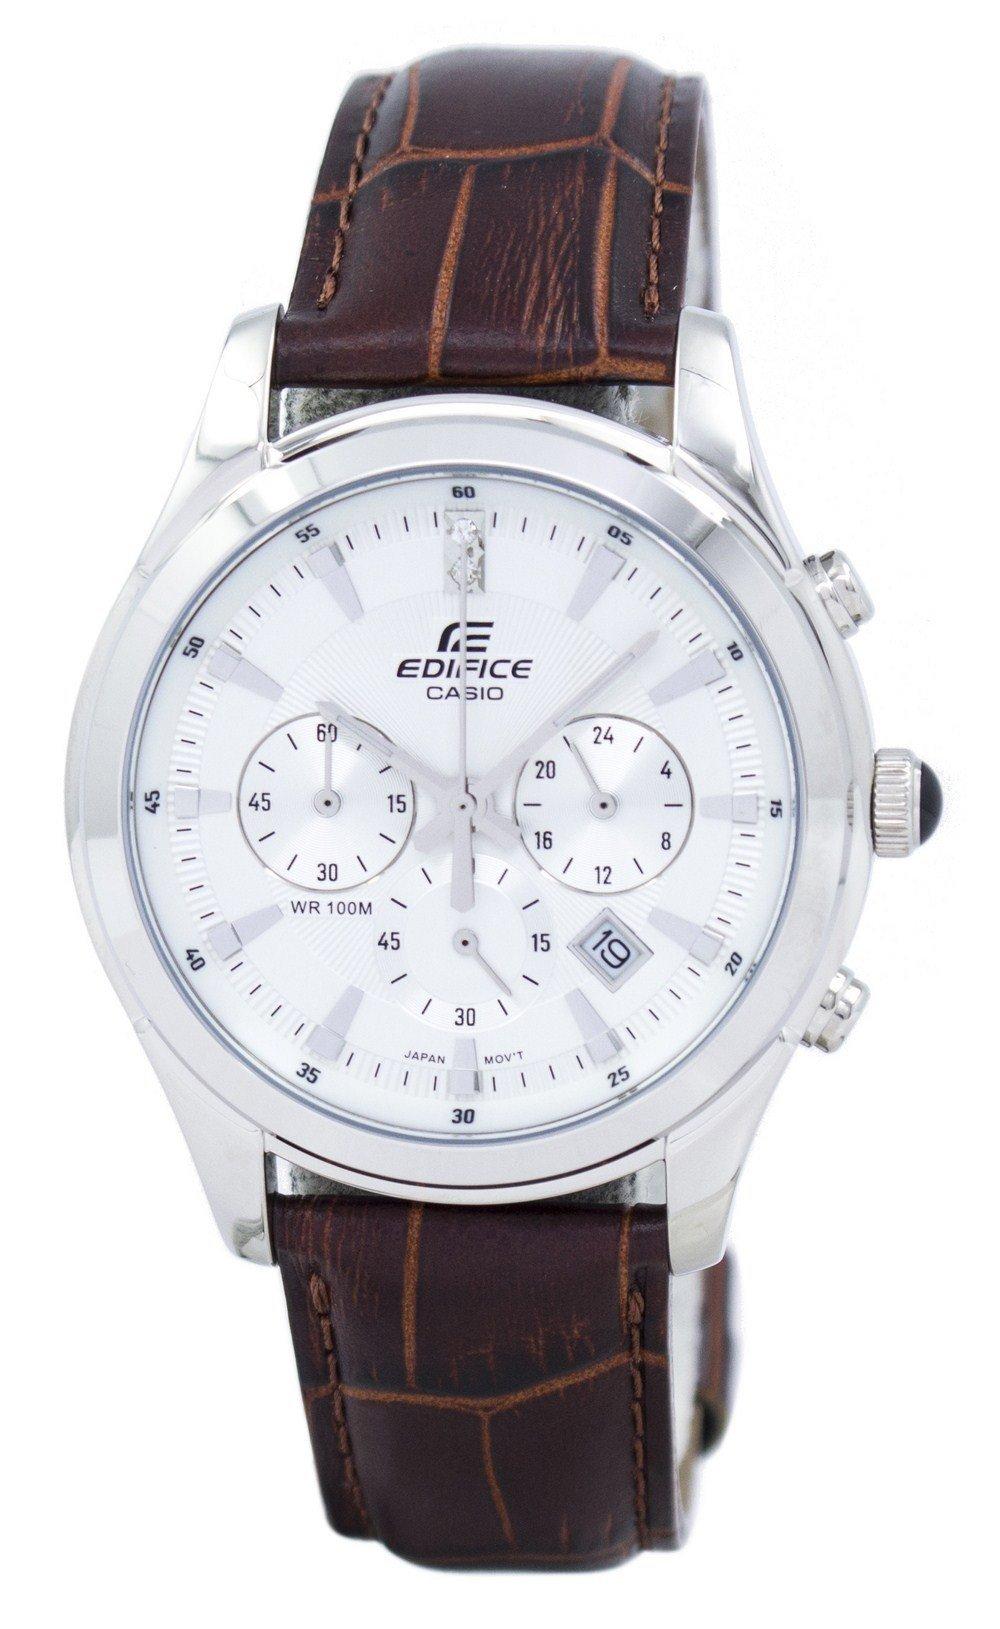 Casio Edifice Chronograph EFR-517L-7AV EFR517L-7AV Men's Watch